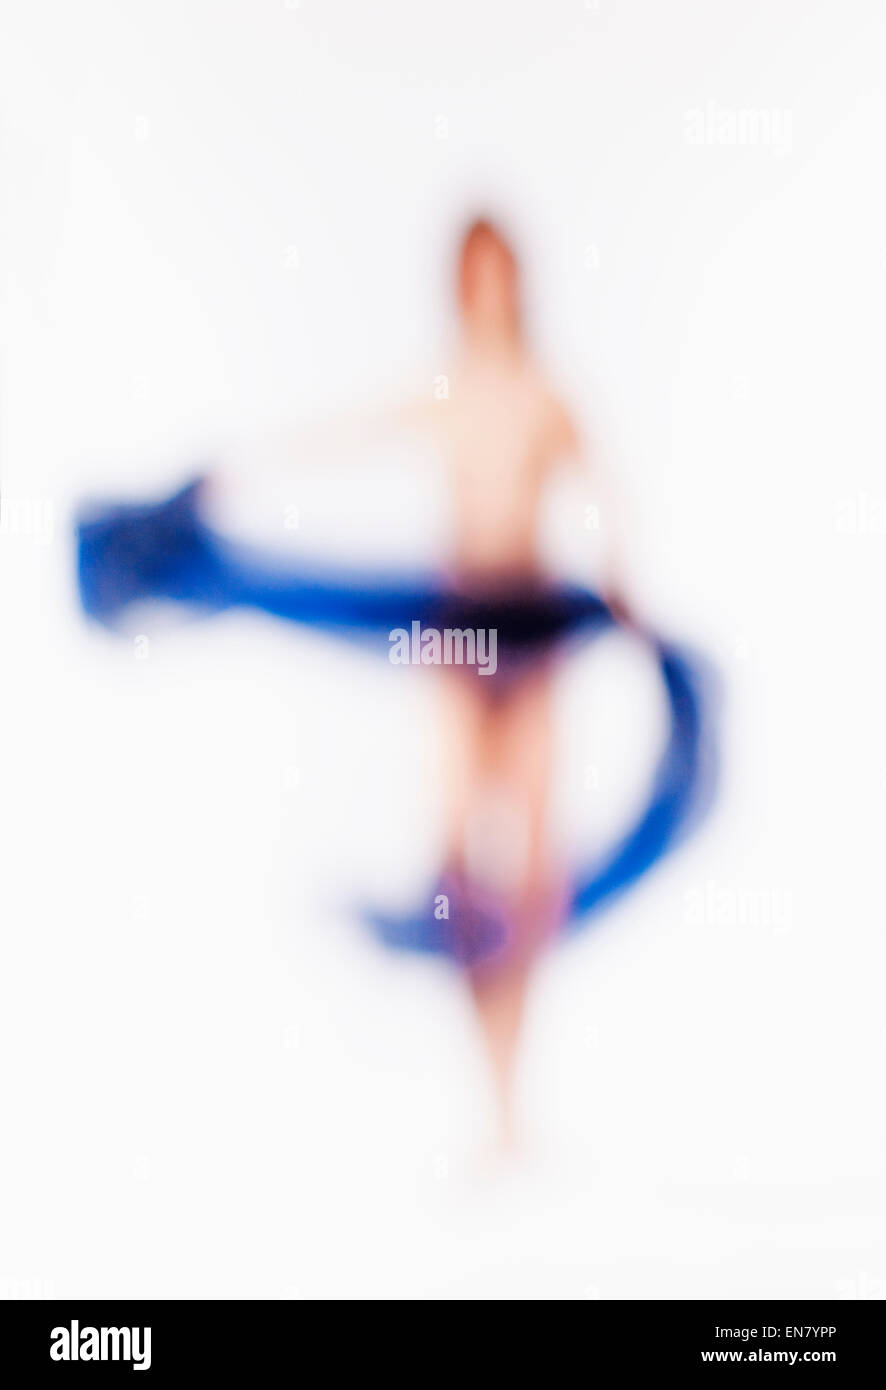 Abstract al di fuori della Messa a fuoco l'immagine di una donna con un panno blu Foto Stock